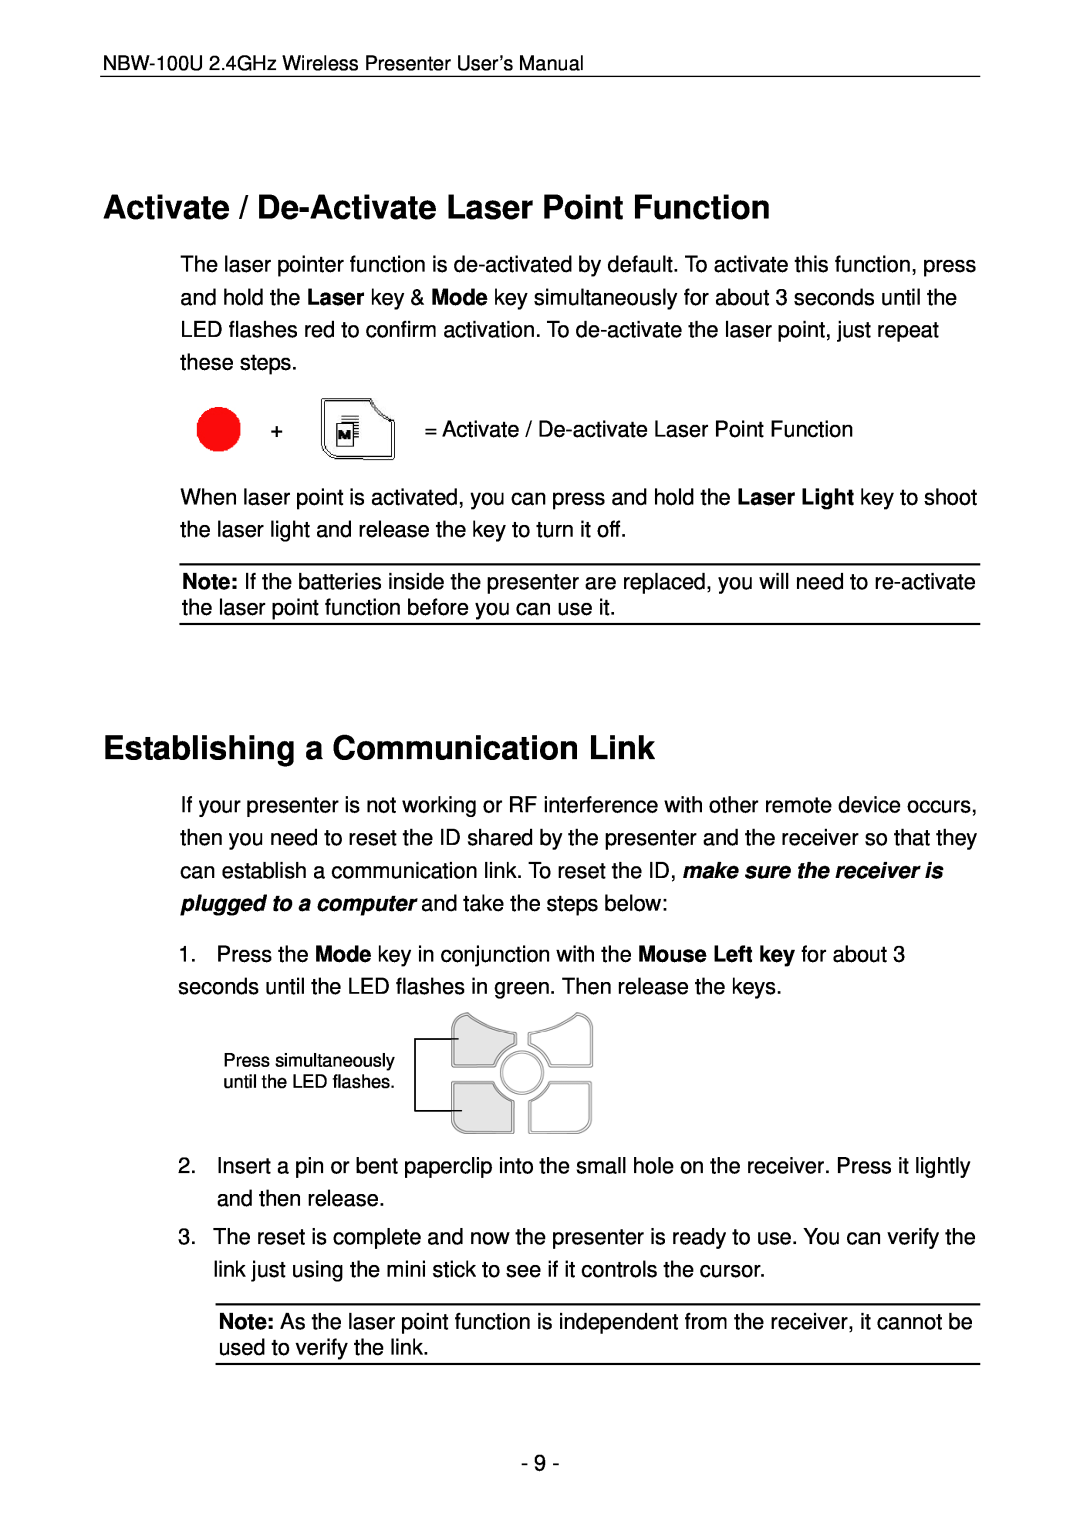 Vantec NBW-100U user manual Activate / De-Activate Laser Point Function, Establishing a Communication Link 